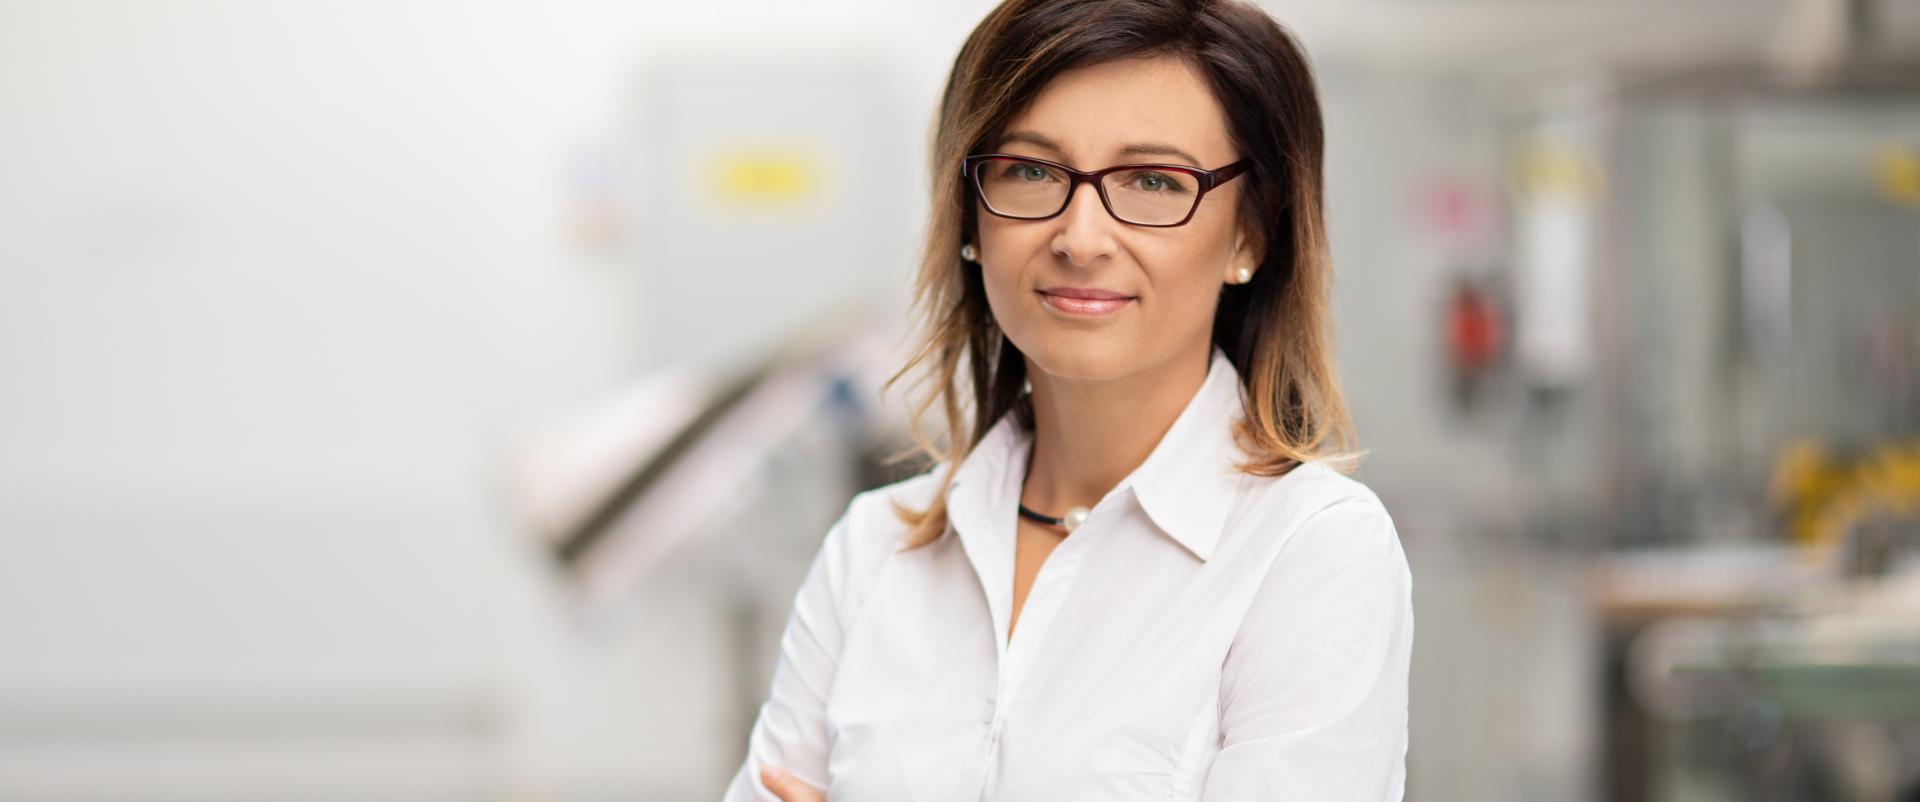 Renata Ciszewska-Kłosińska, Delia Cosmetics: biznes kosmetyczny jest idealnym gruntem do pracy nad ciałopozytywnością